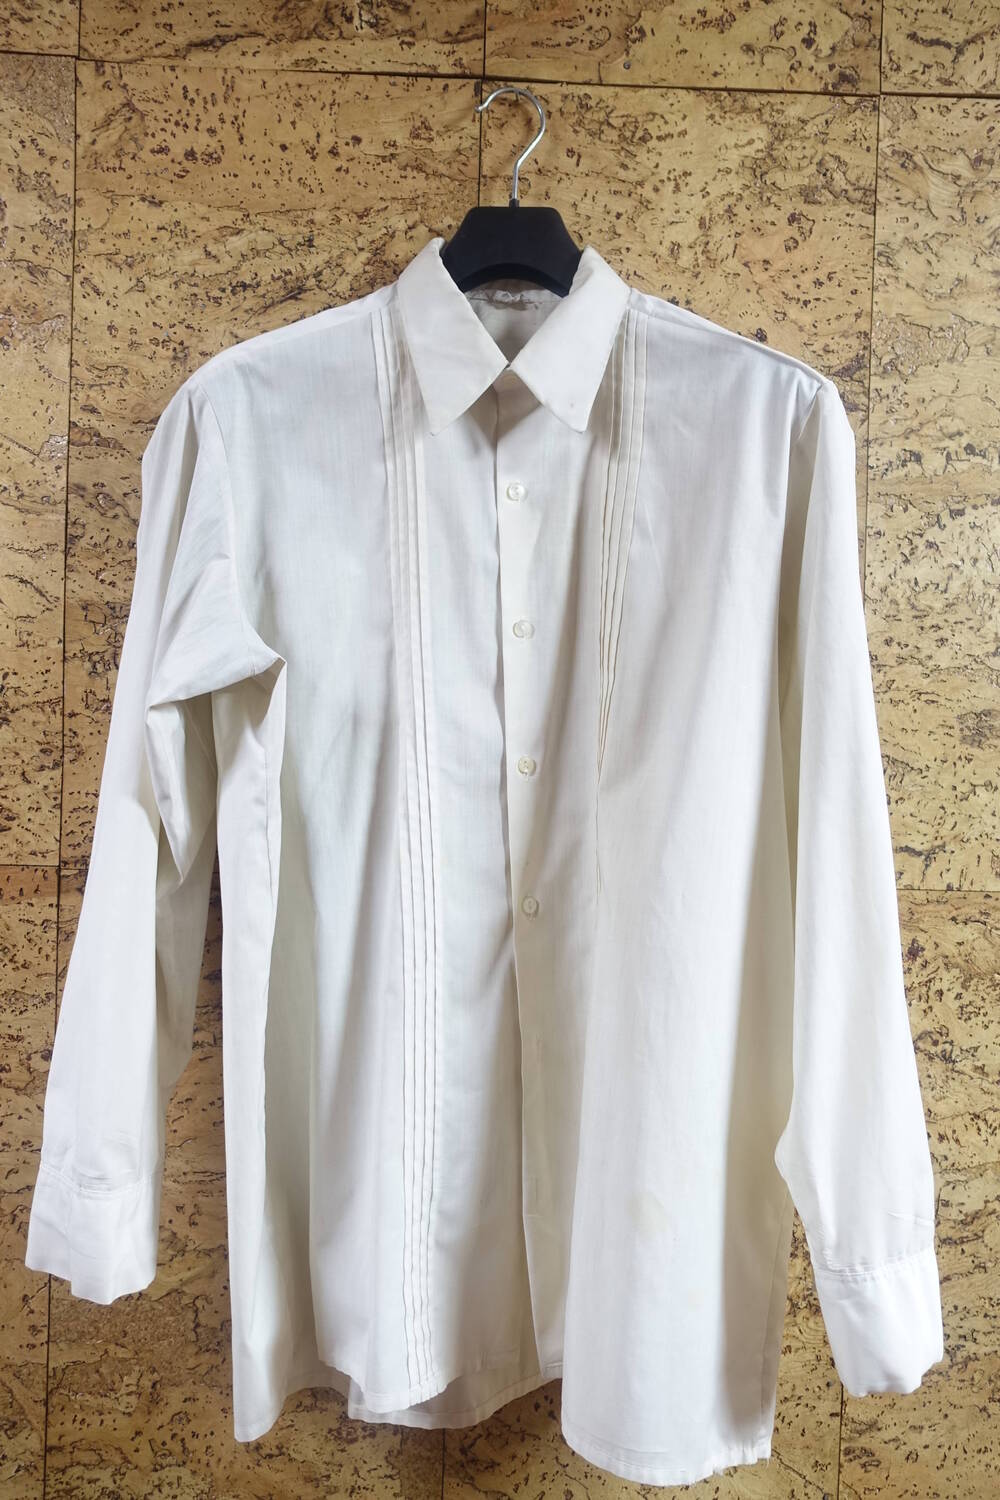 Рубашка белая, хлопчатобумажная ткань, размер 50. Принадлежала В.А. Чивилихину.